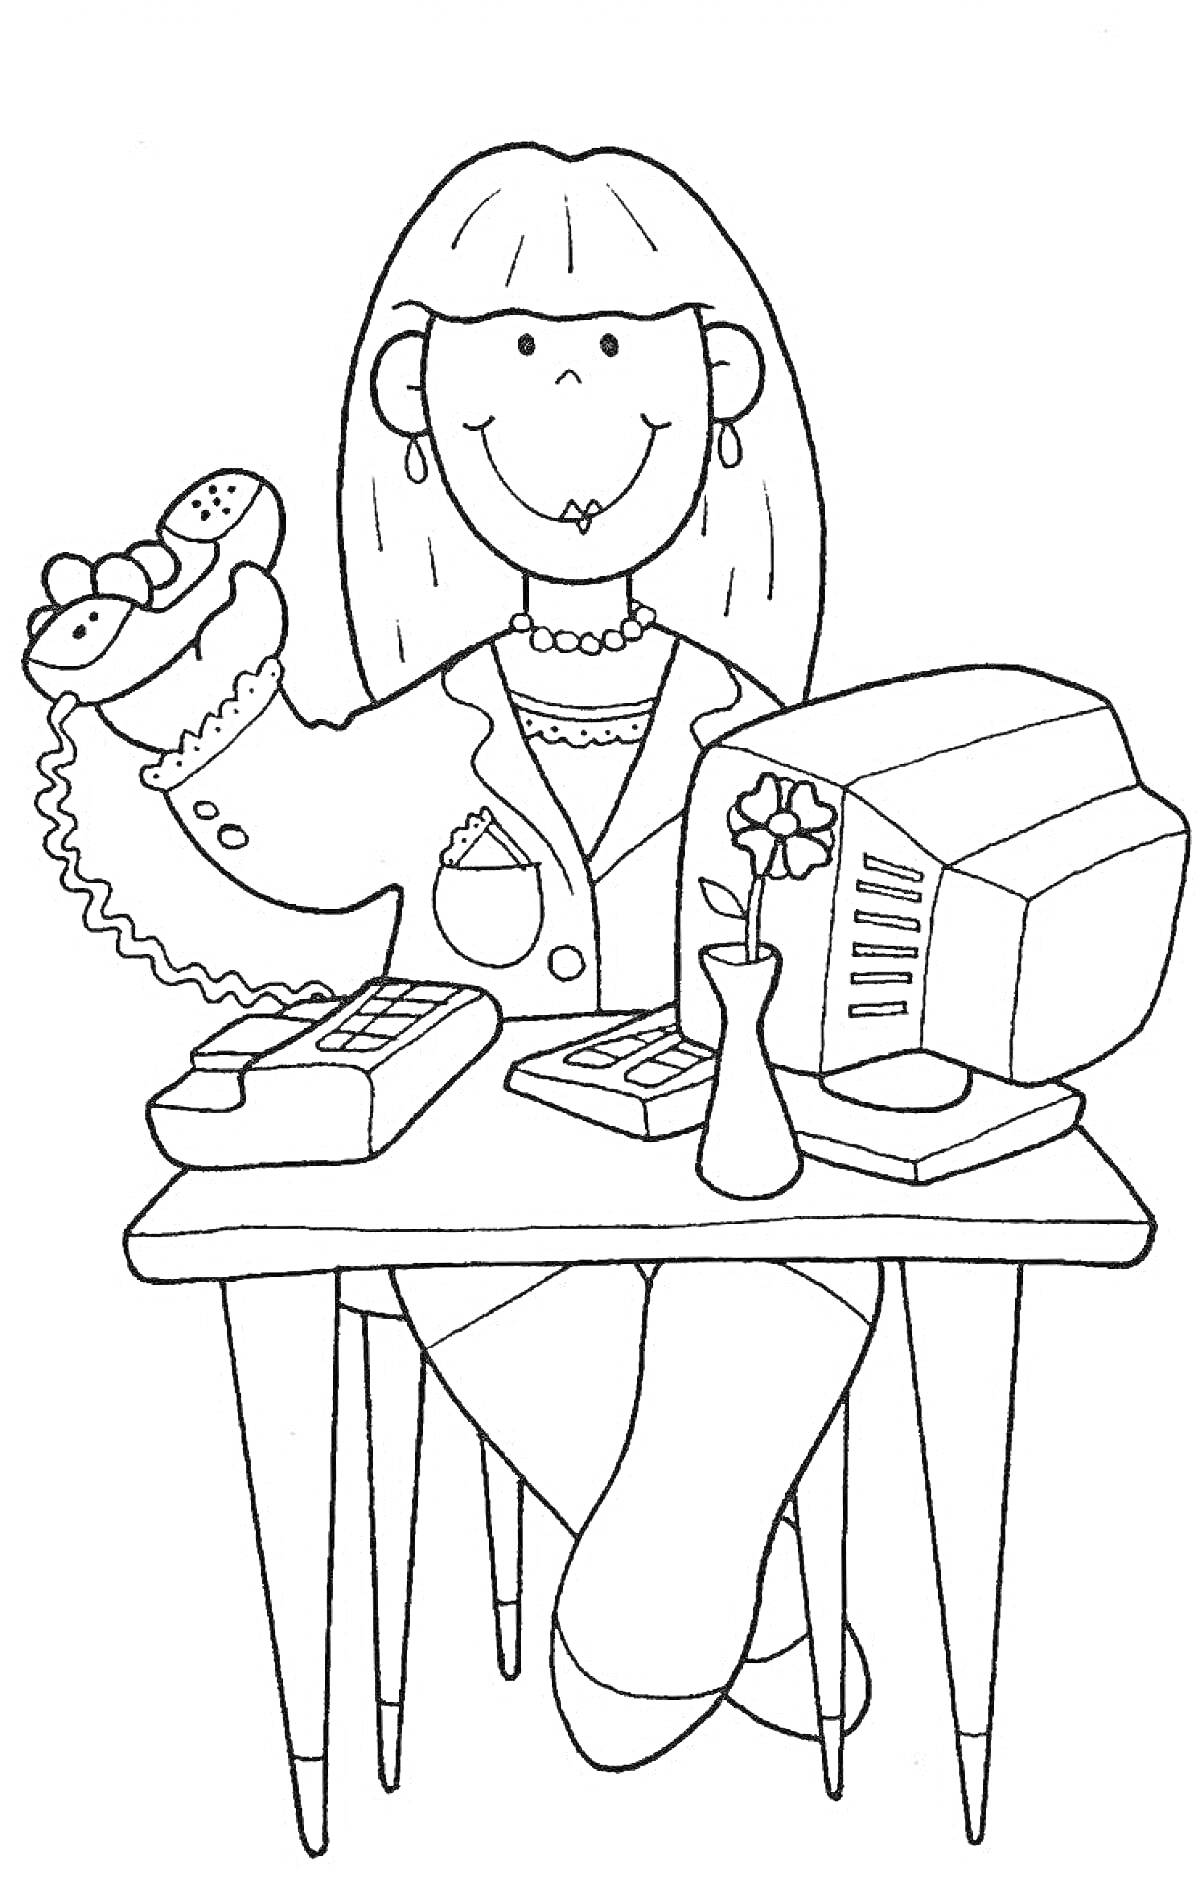  Секретарь: женщина с телефоном, компьютер, цветок в вазе, документы, стол